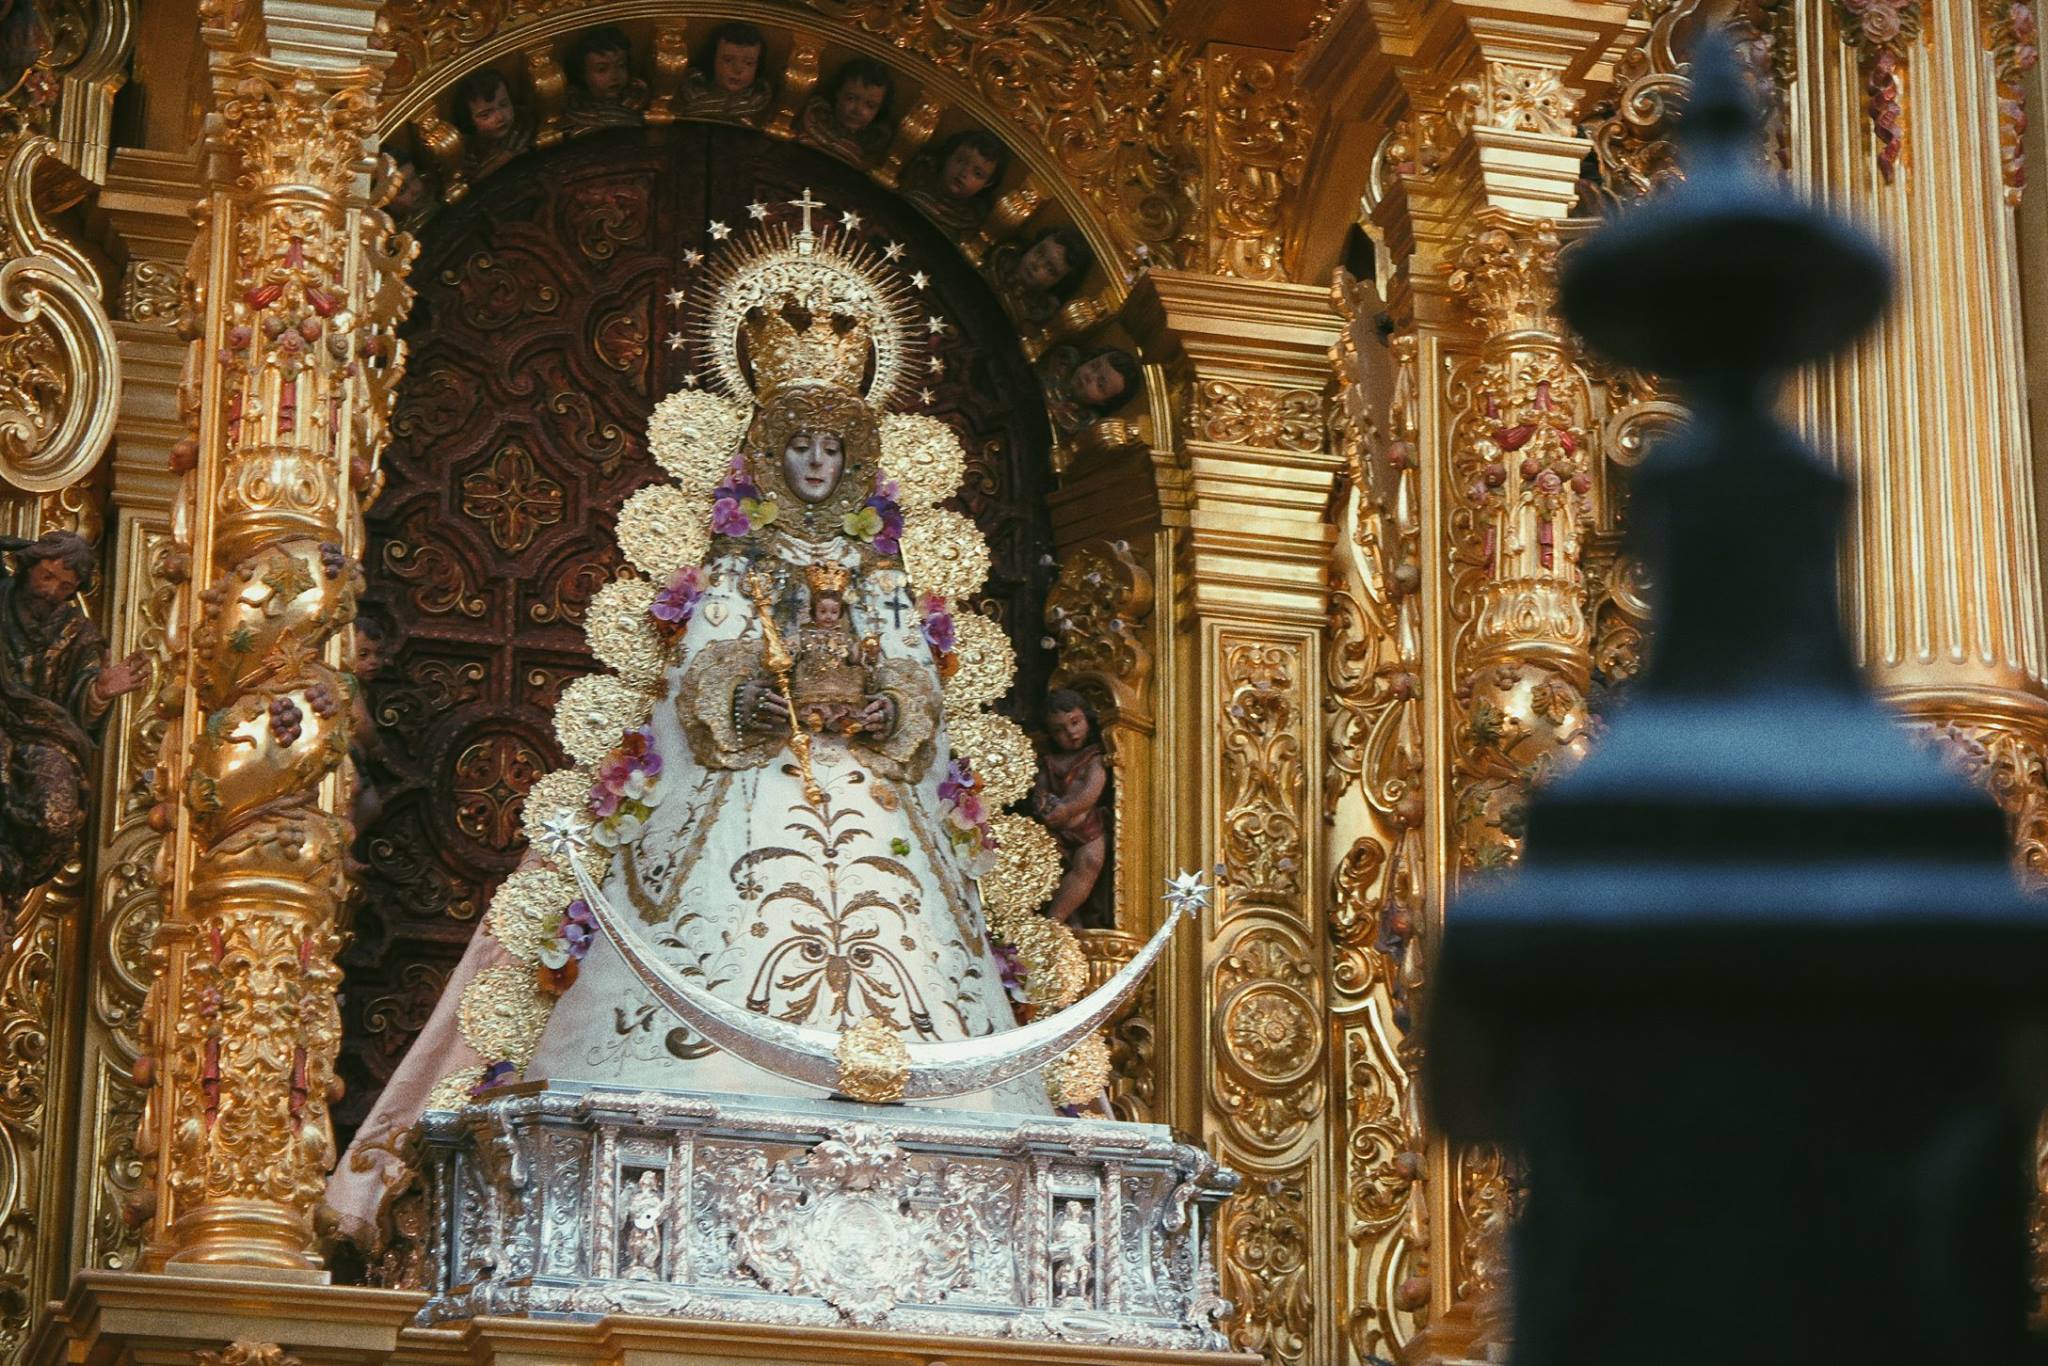 La Virgen del Rocío, entronizada de nuevo en la peana de su camarín